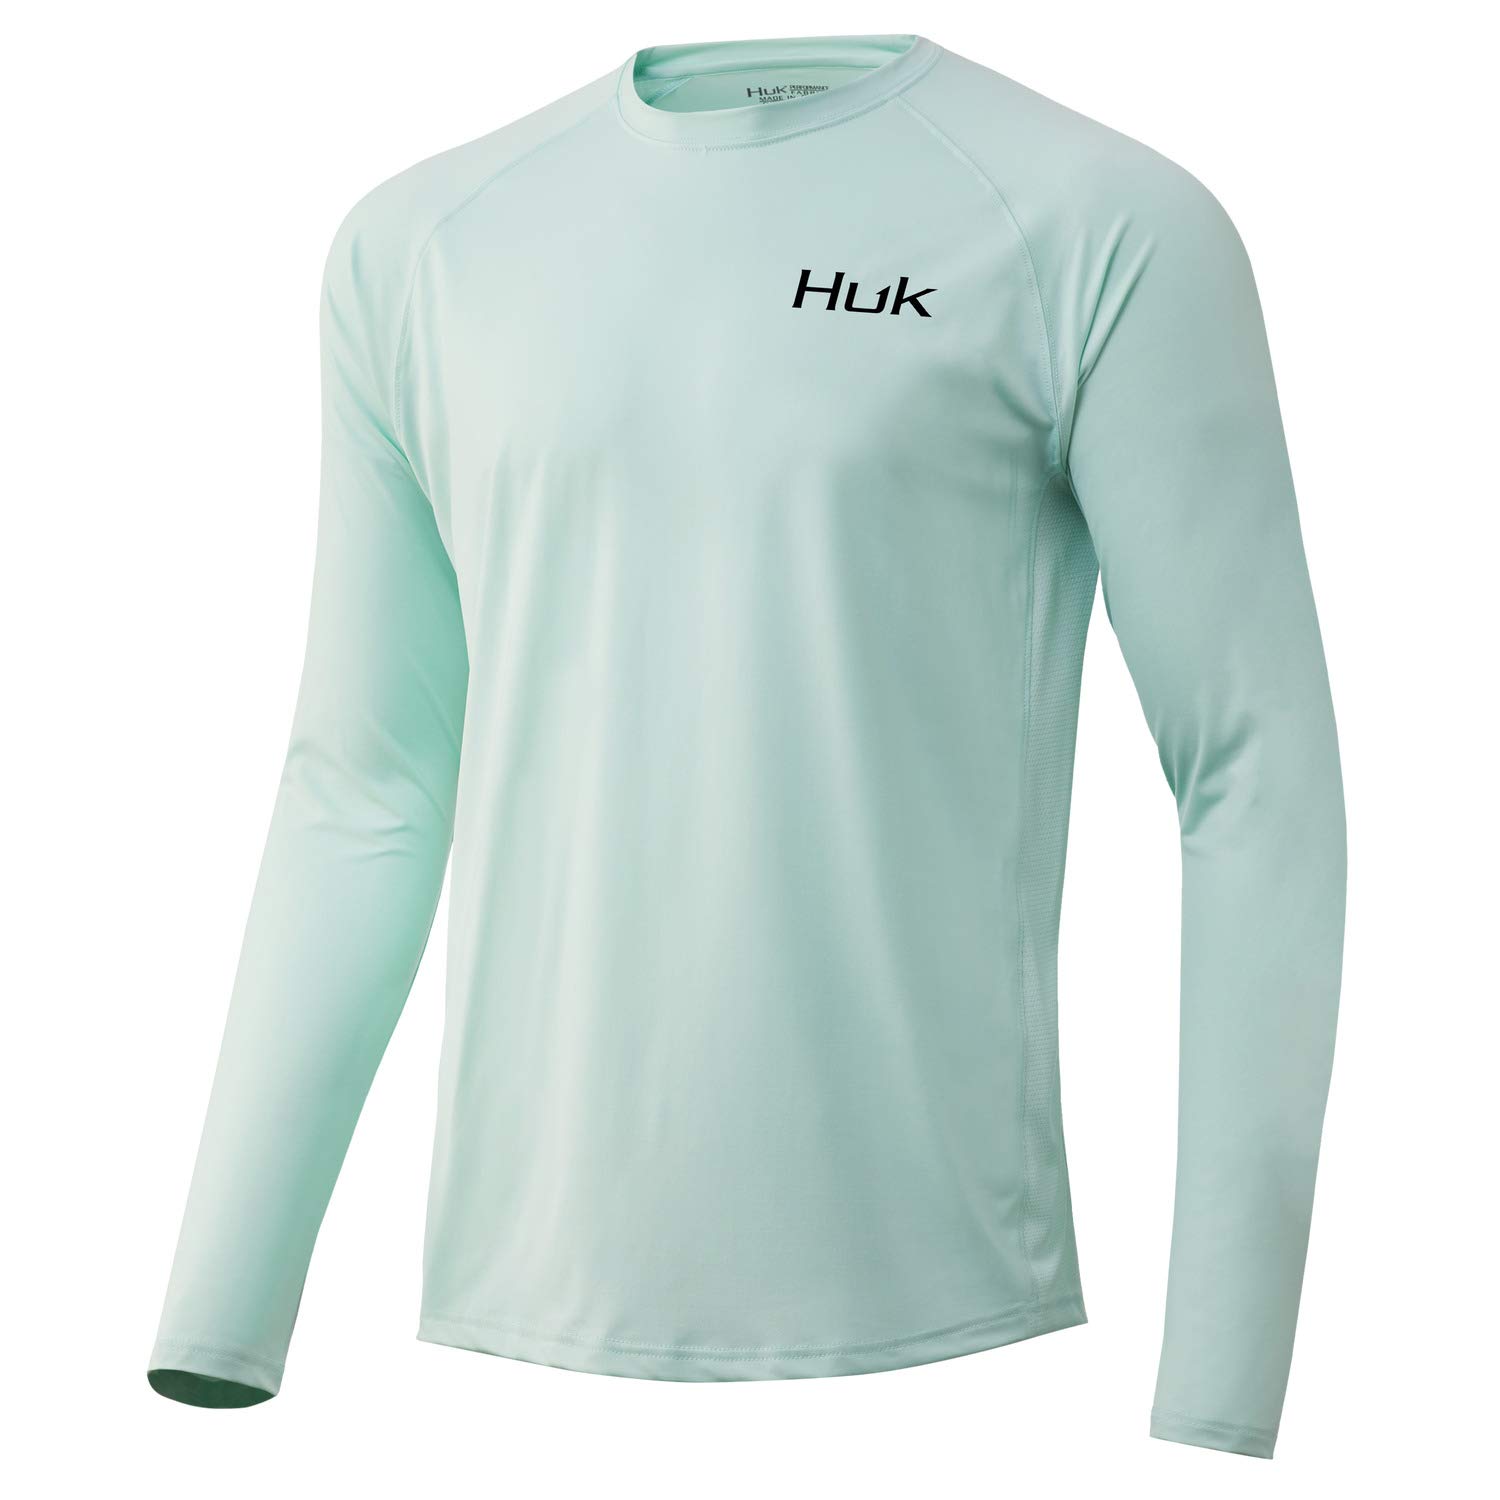 HUK Men's Pursuit Long Sleeve Sun Protecting Fishing Shirt, Huk'd Up-Seafoam, Medium